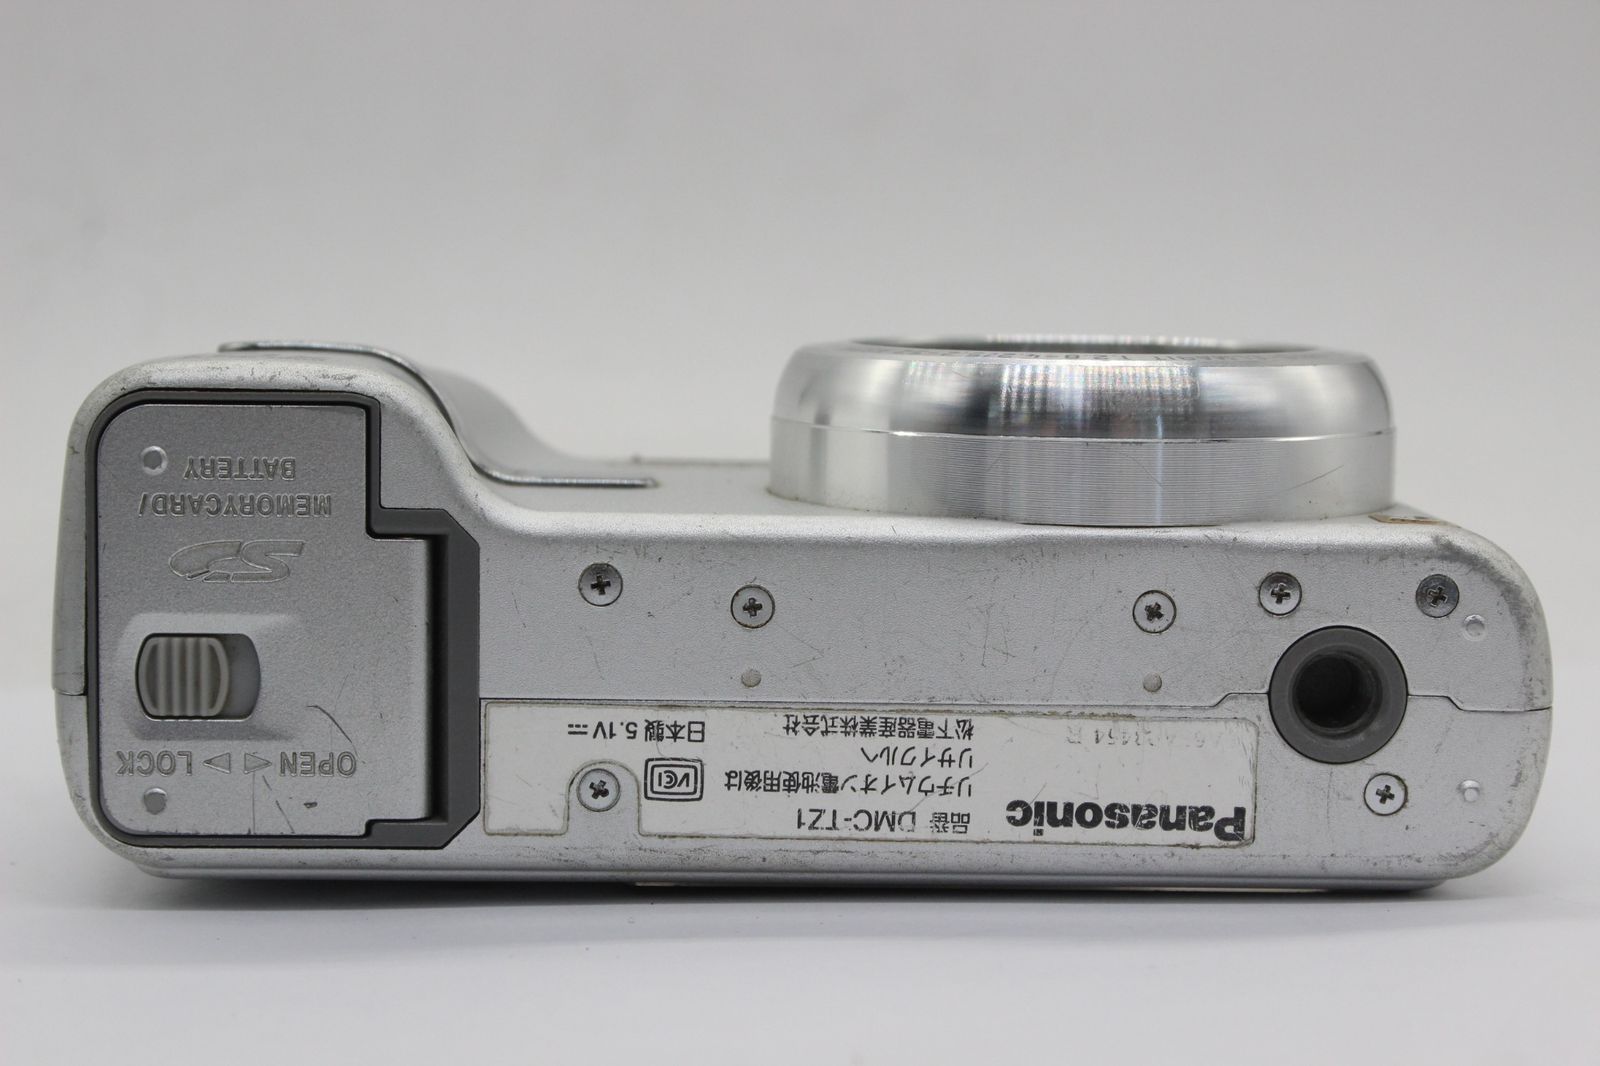 【返品保証】 パナソニック Panasonic LUMIX DMC-TZ1 10x バッテリー チャージャー付き コンパクトデジタルカメラ v898